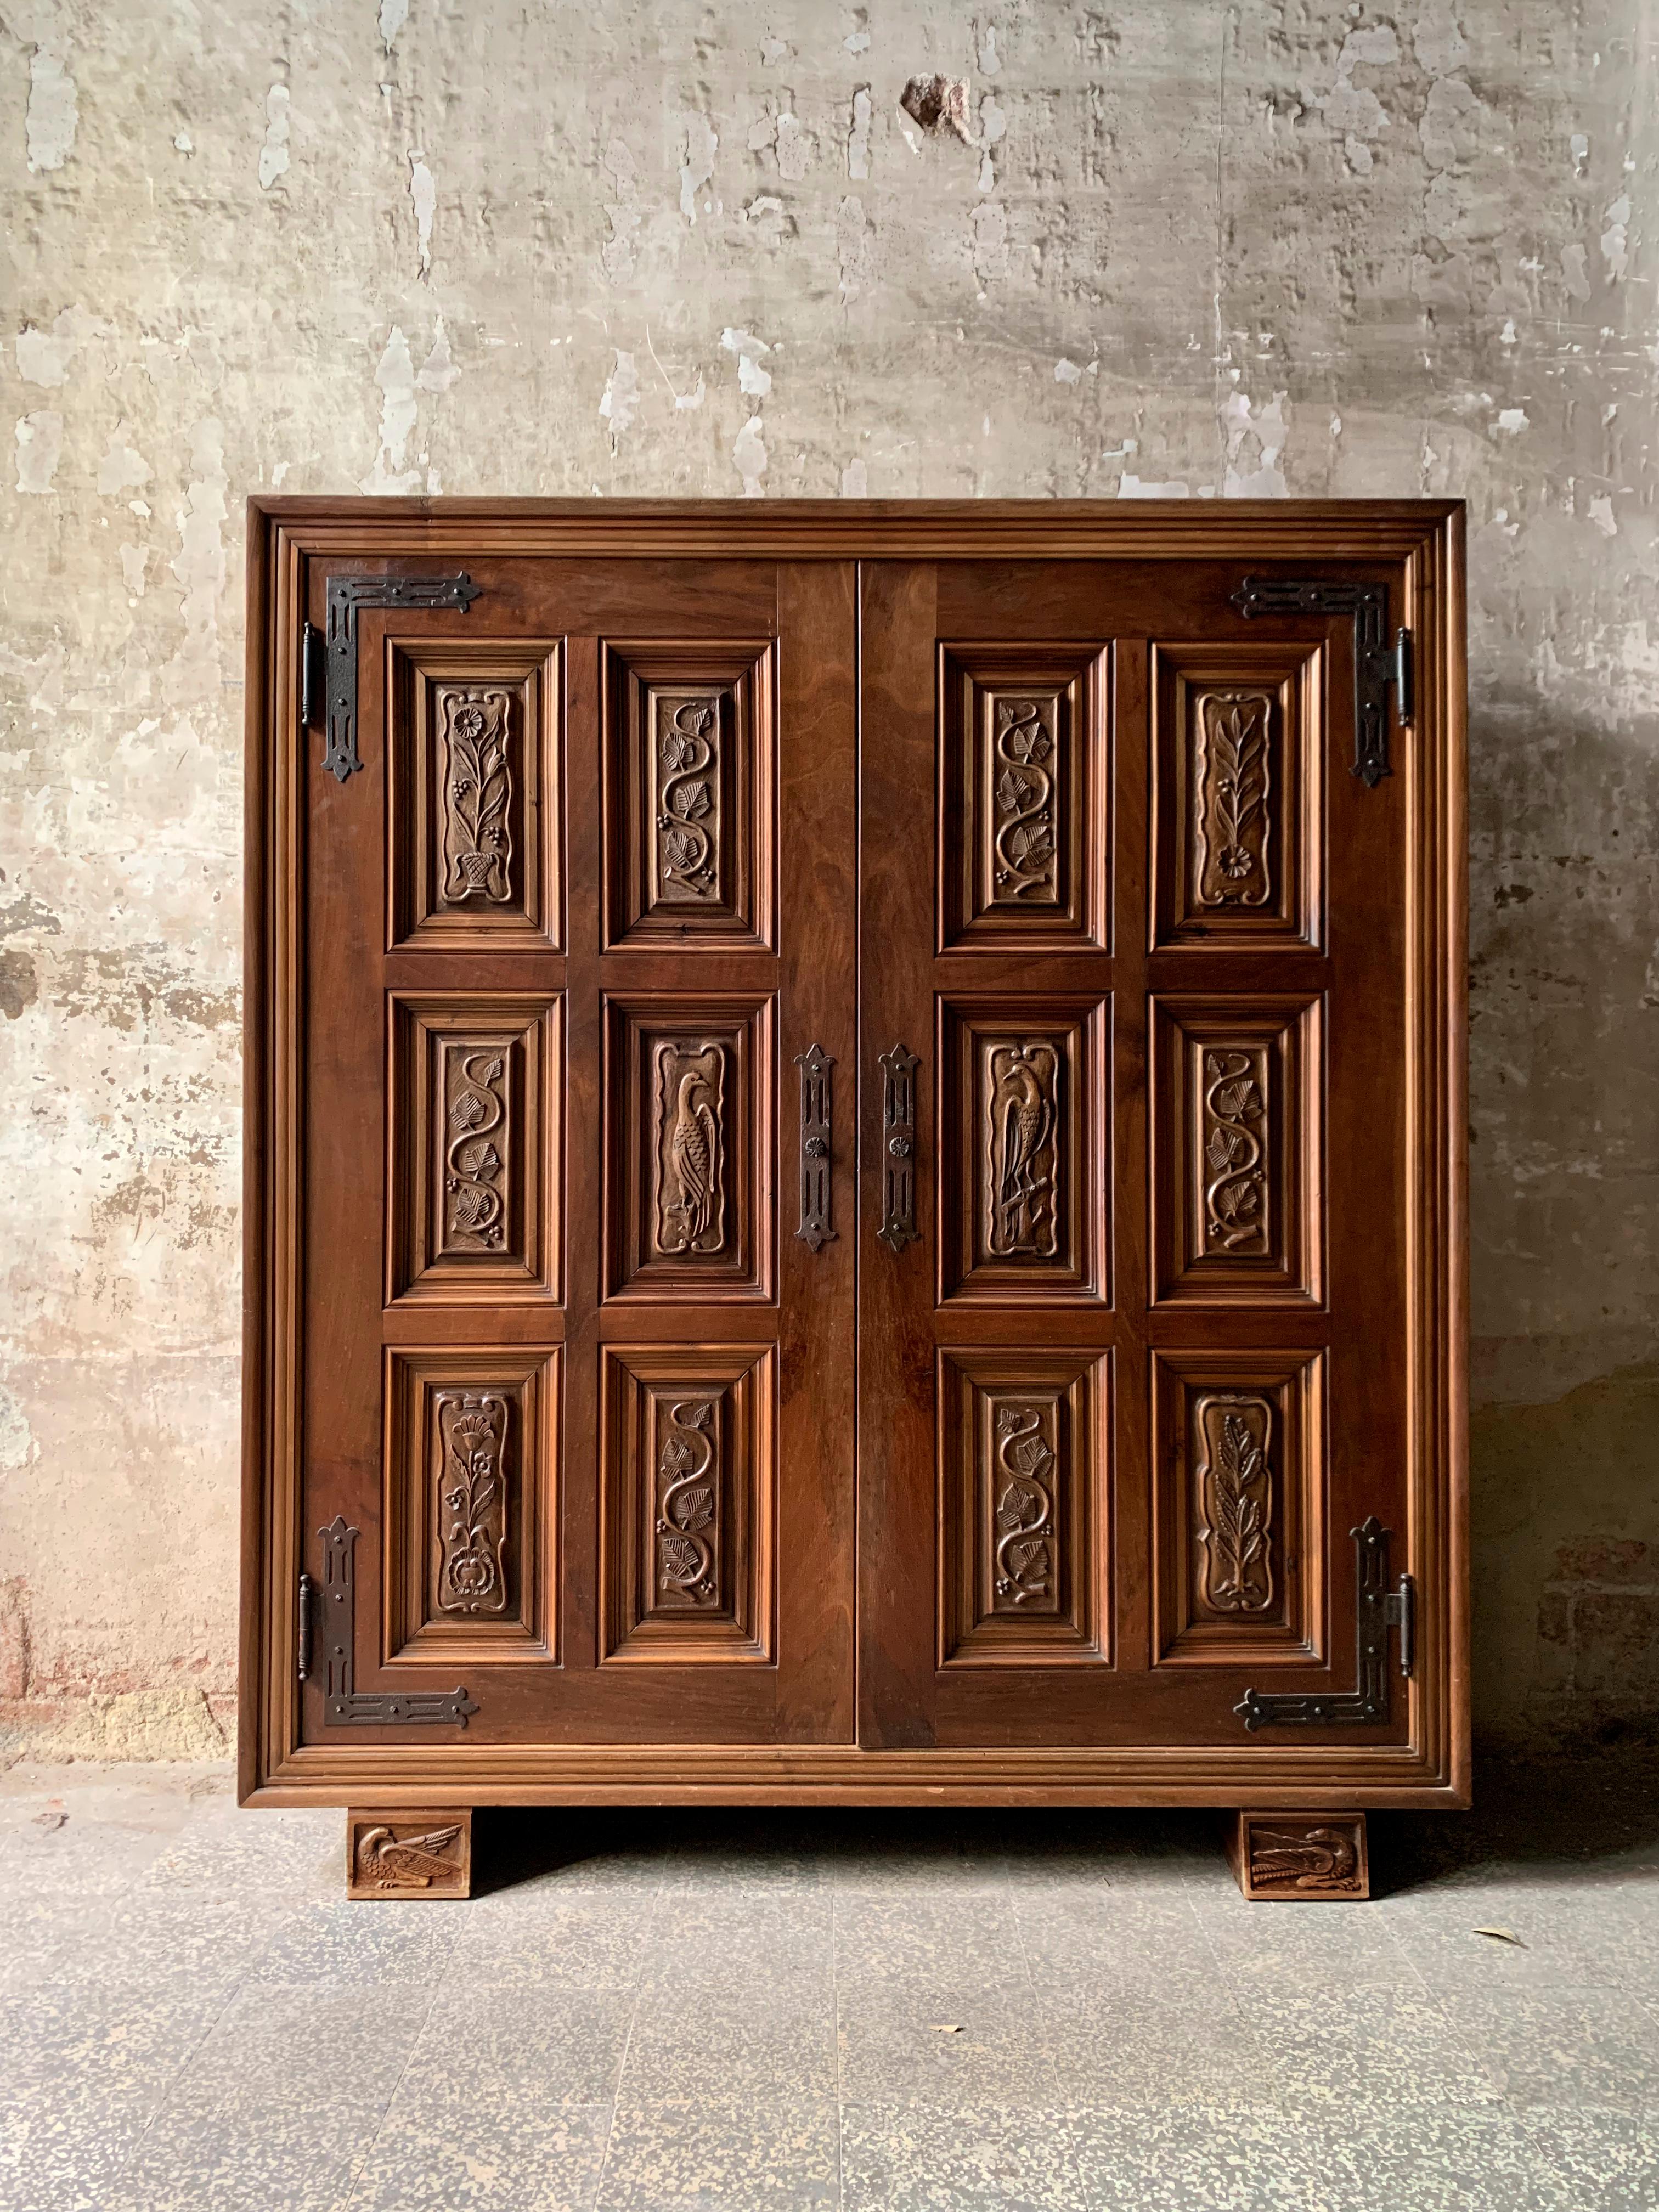 Wir präsentieren Ihnen dieses herrliche Möbelstück im spanischen organischen Stil, ein wahres Schmuckstück, das um 1940 aus Holz gefertigt wurde. Jeder Aspekt dieses handwerklich gefertigten Stücks strahlt Charme und Eleganz aus und fängt die Essenz